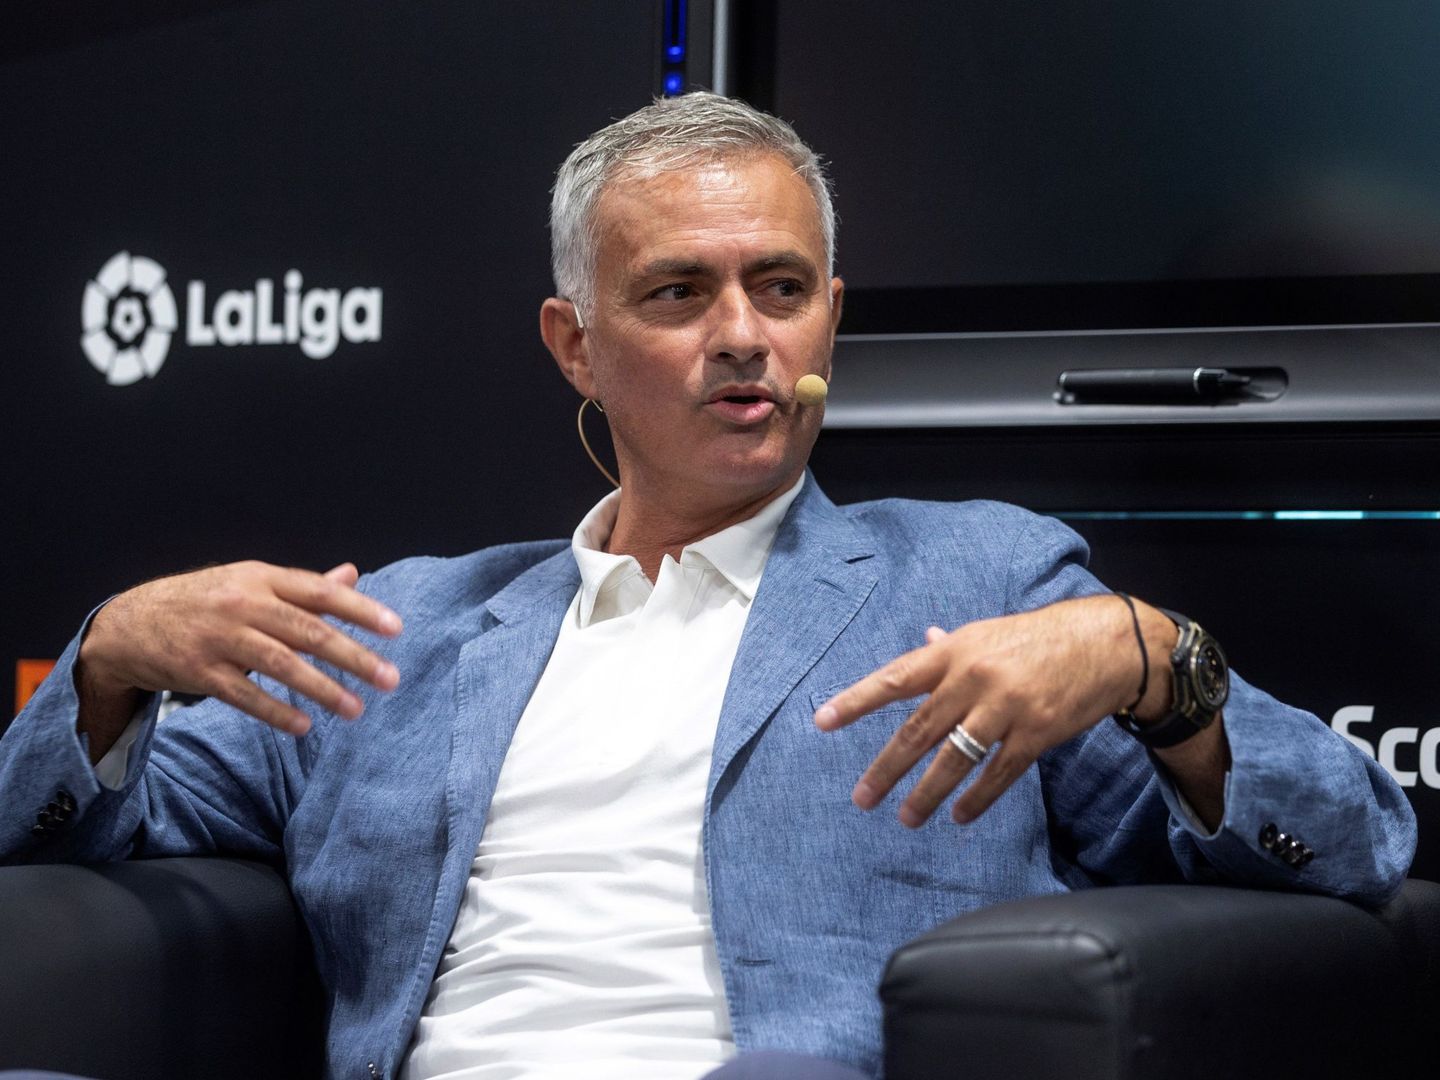 José Mourinho estuvo hace unos días en Madrid en un acto de LaLiga. (EFE)